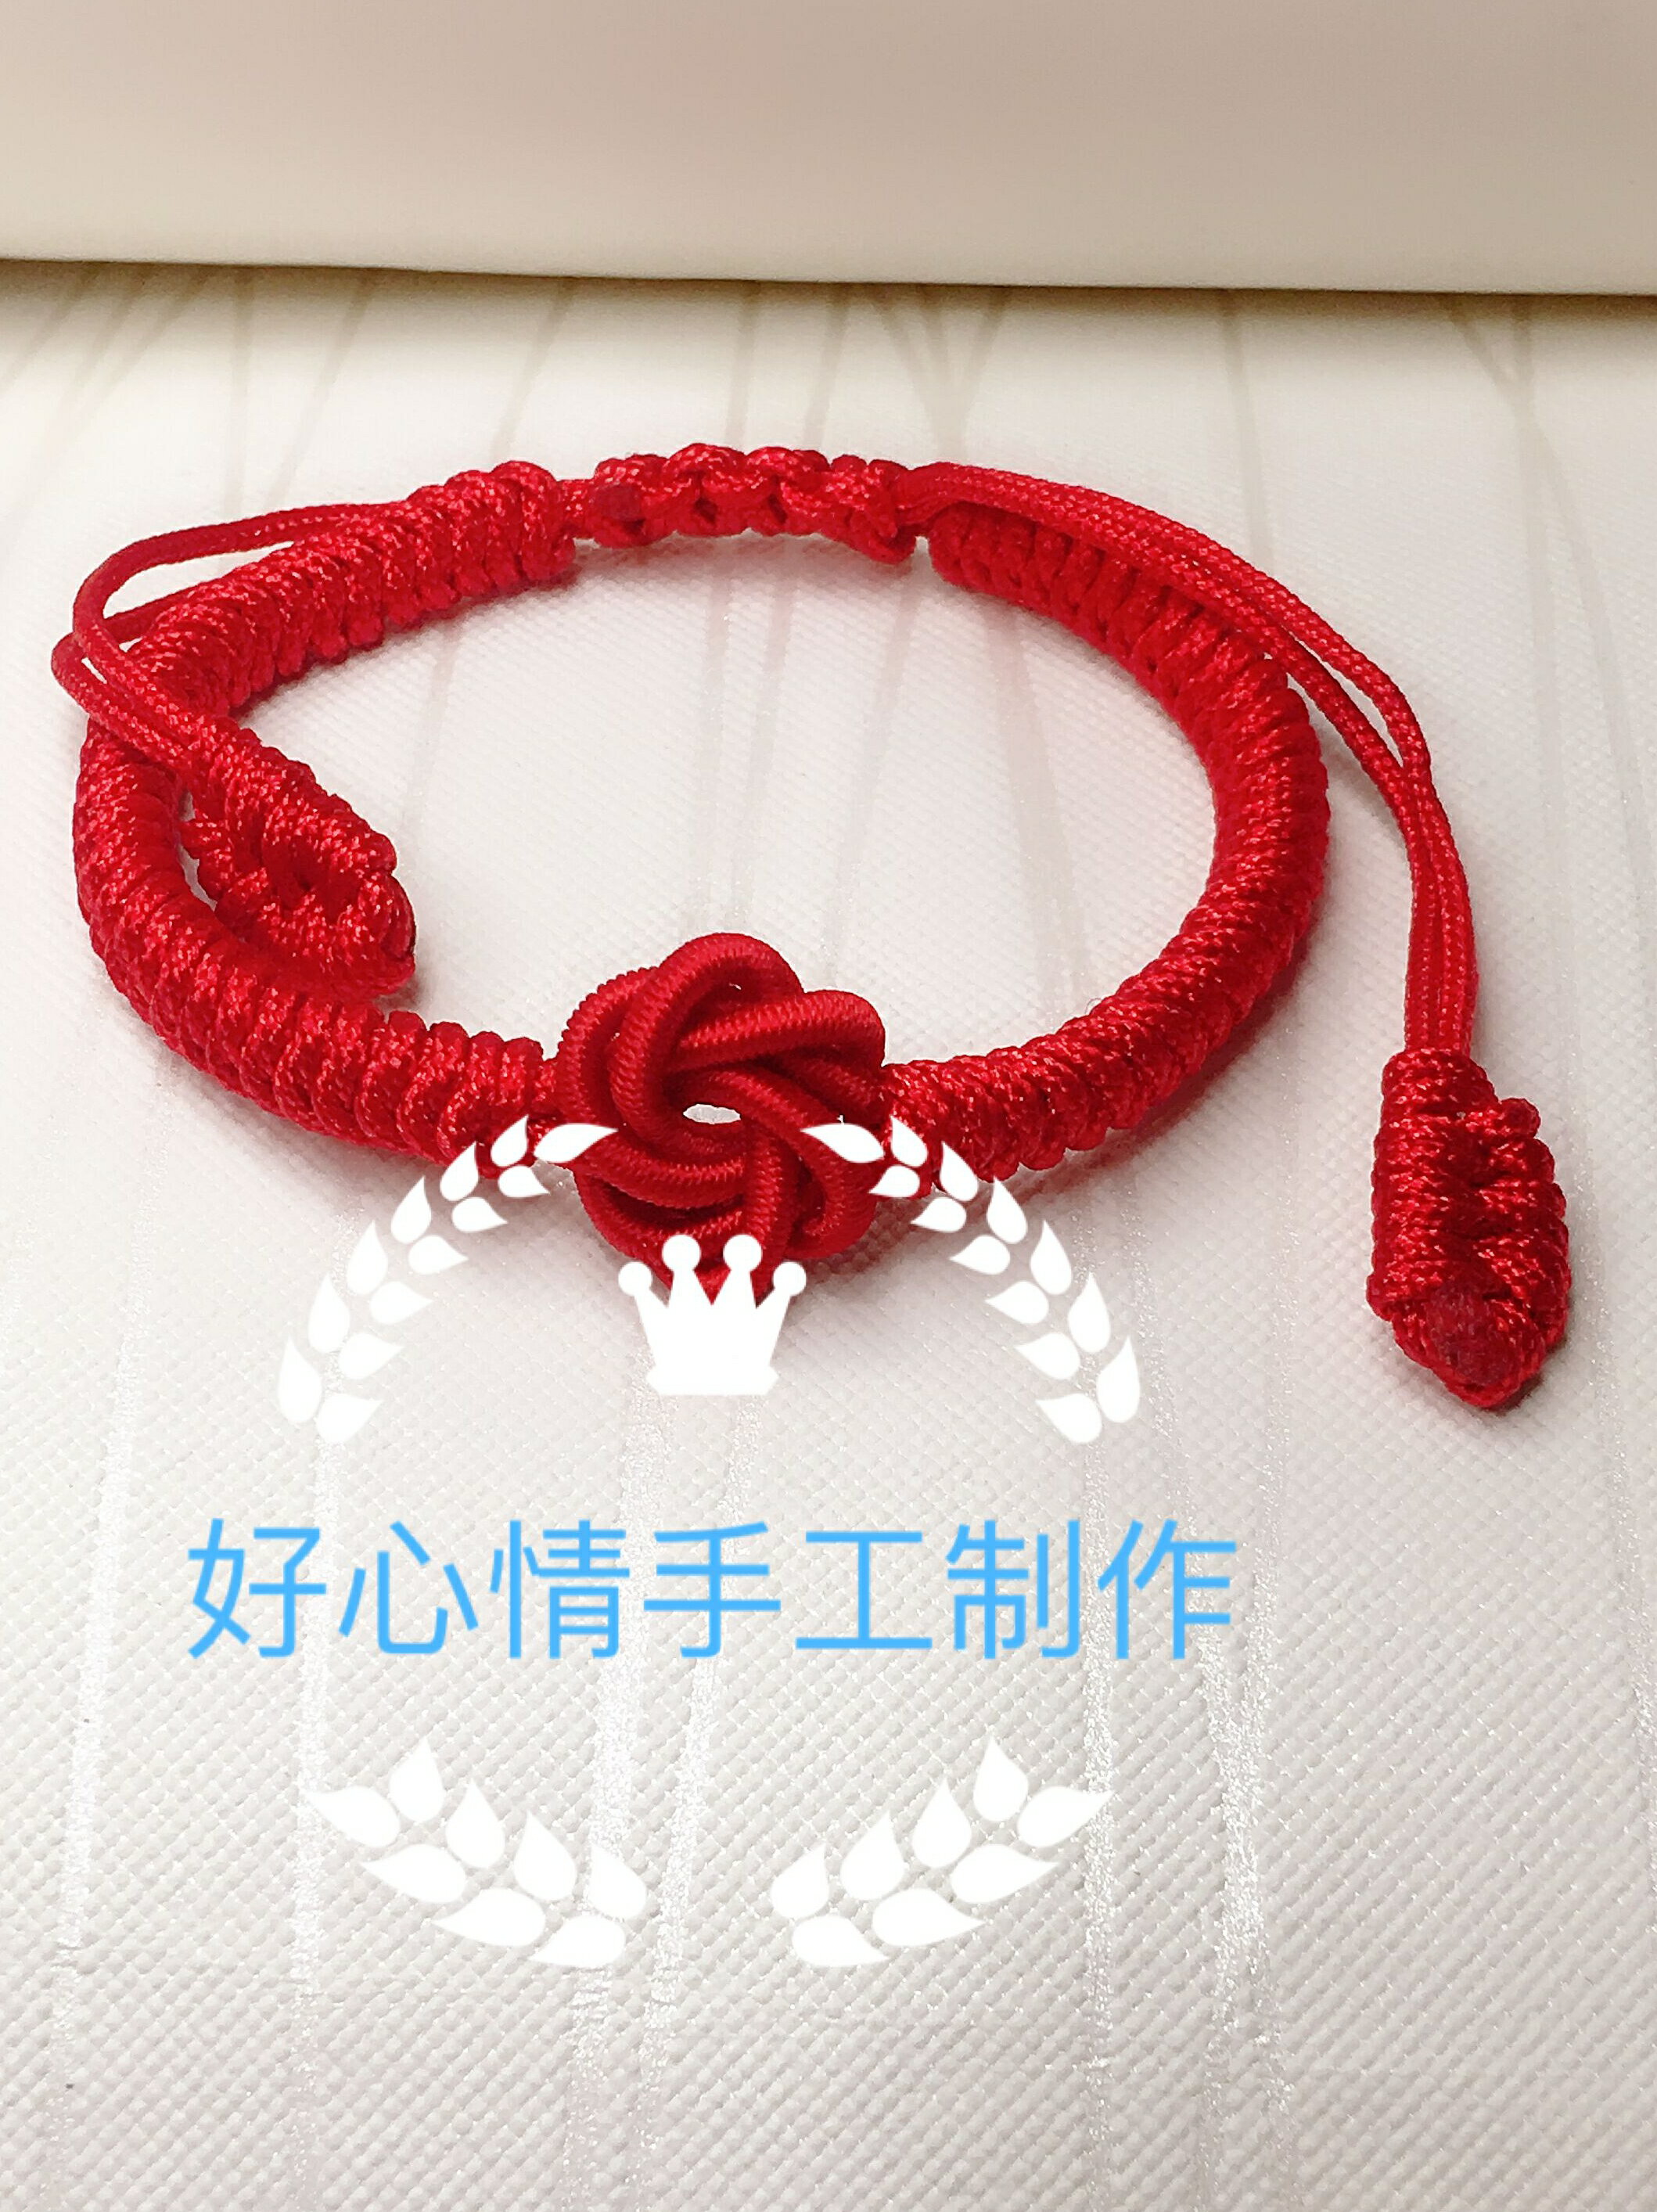 好心情手工編織中國結藝本命年紅繩六瓣曼陀羅手鏈DIY材料包成品